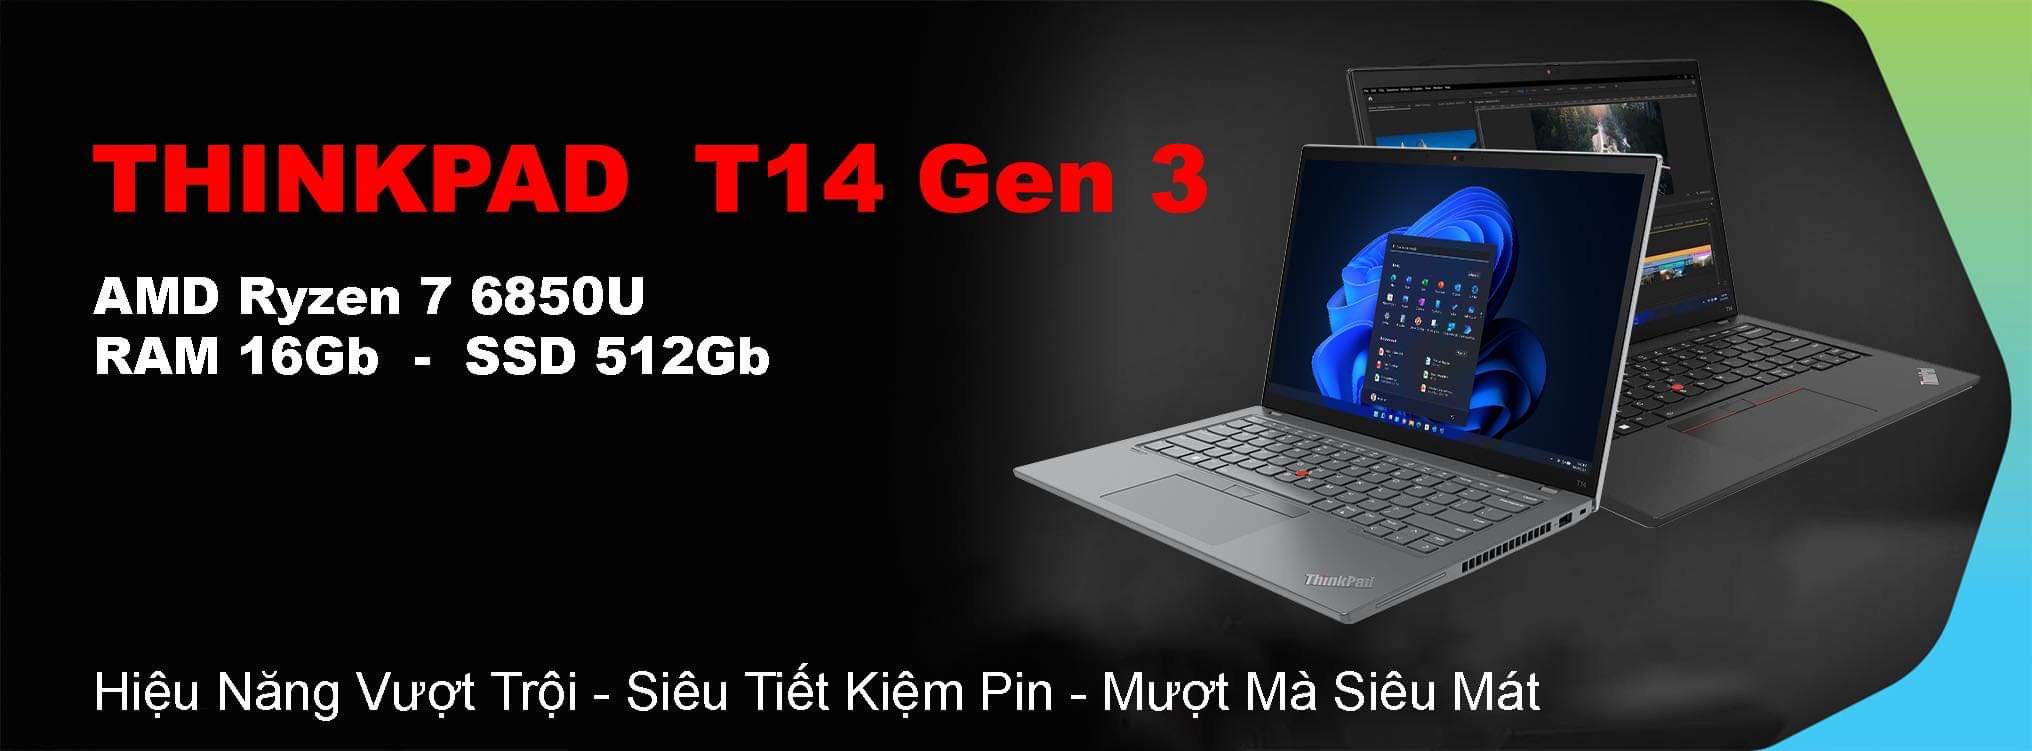 ThinkPad T14 Gen 3 